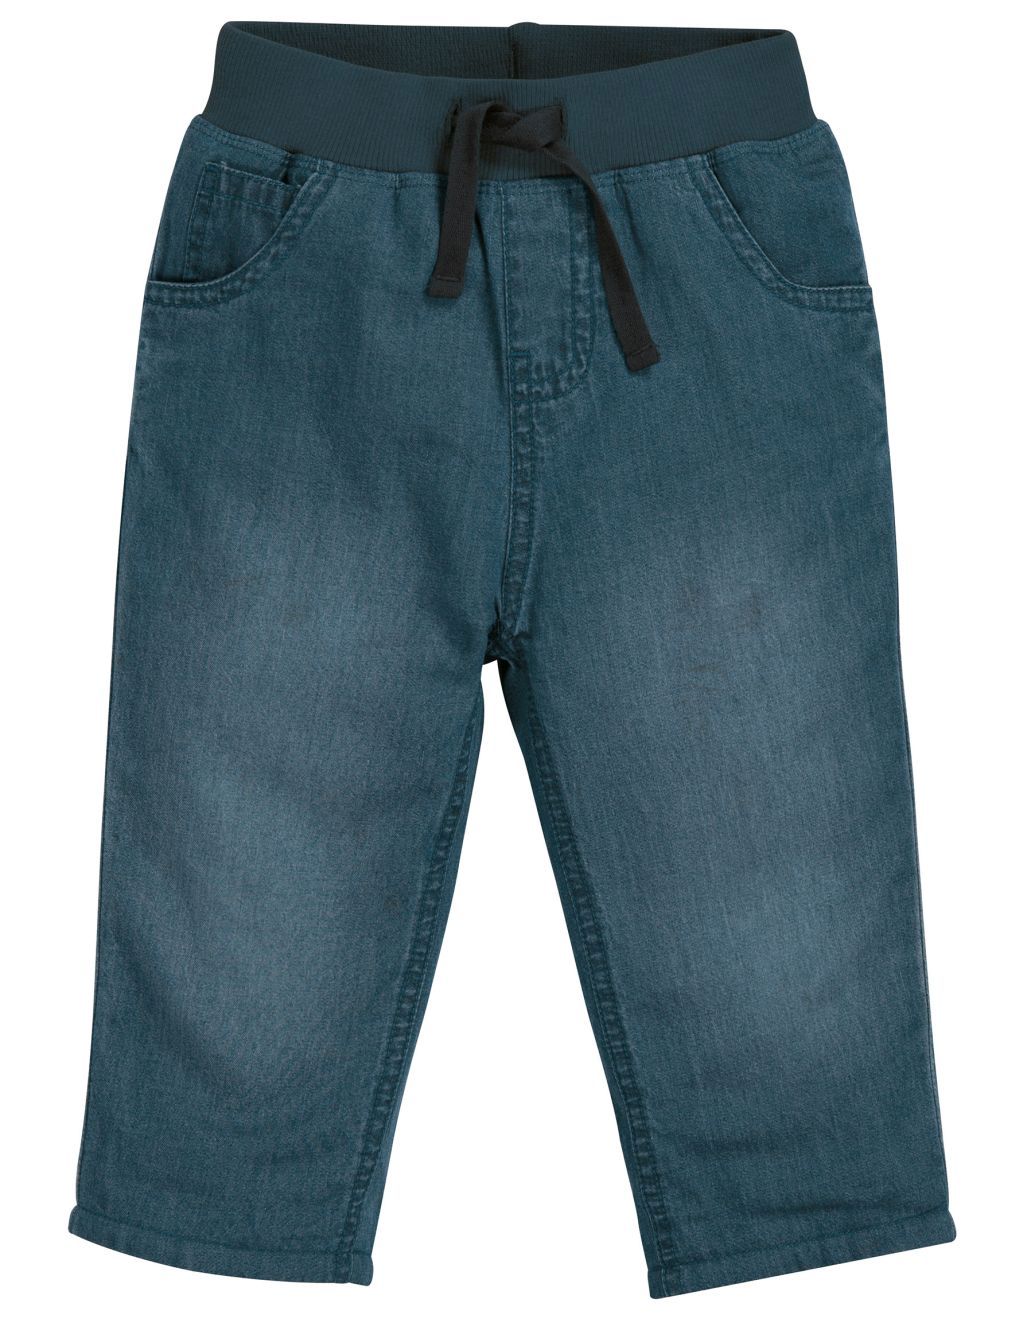 Comfy Lined Jeans Light Wash Denim 80/86